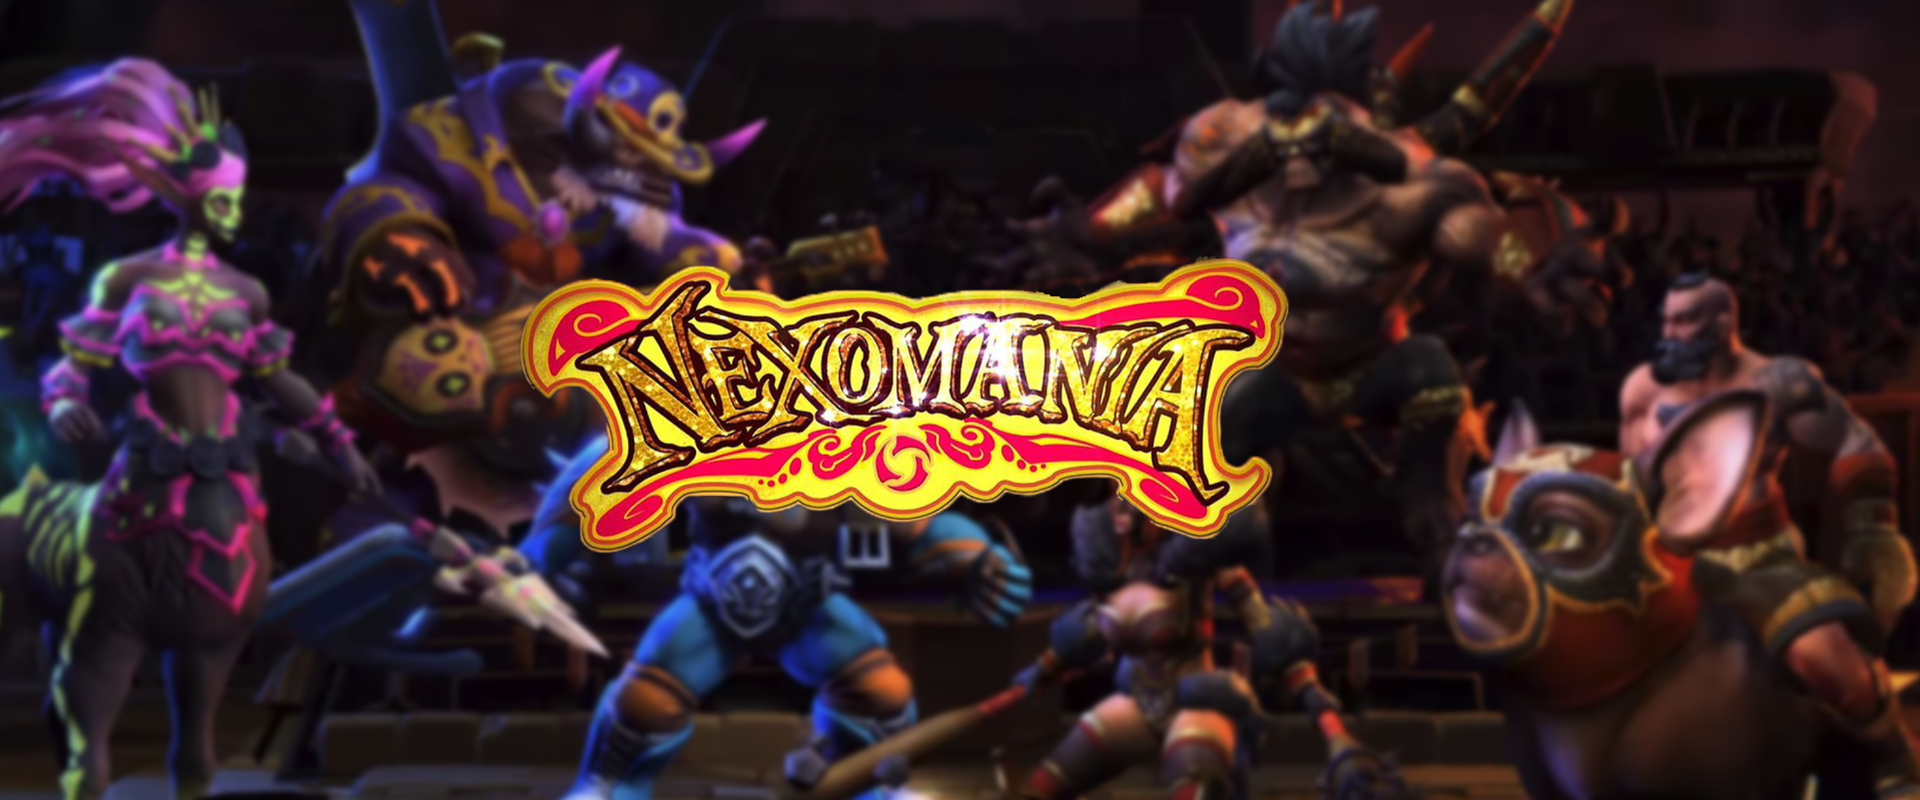 Megvan a Nexomania event indulásának időpontja